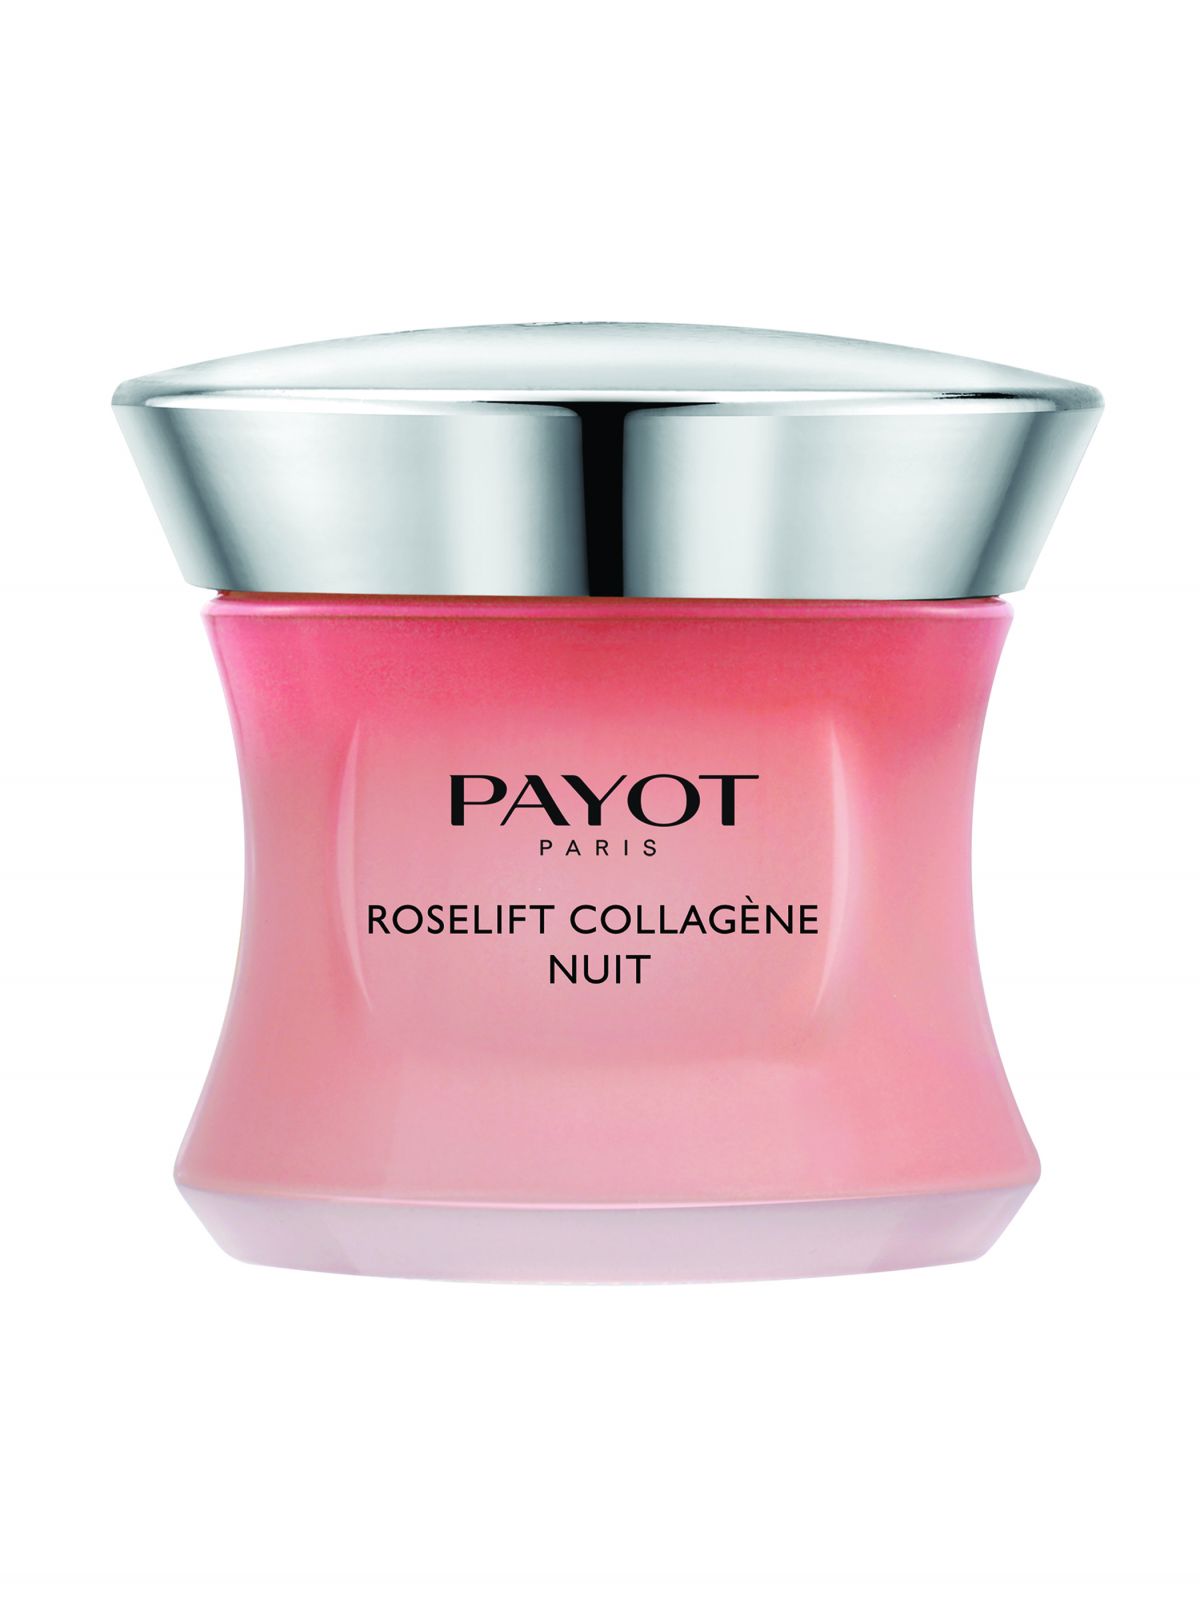  רוז ליפט קרם לילה עשיר לשיפור מוצקות העור Roselift Night Cream של PAYOT